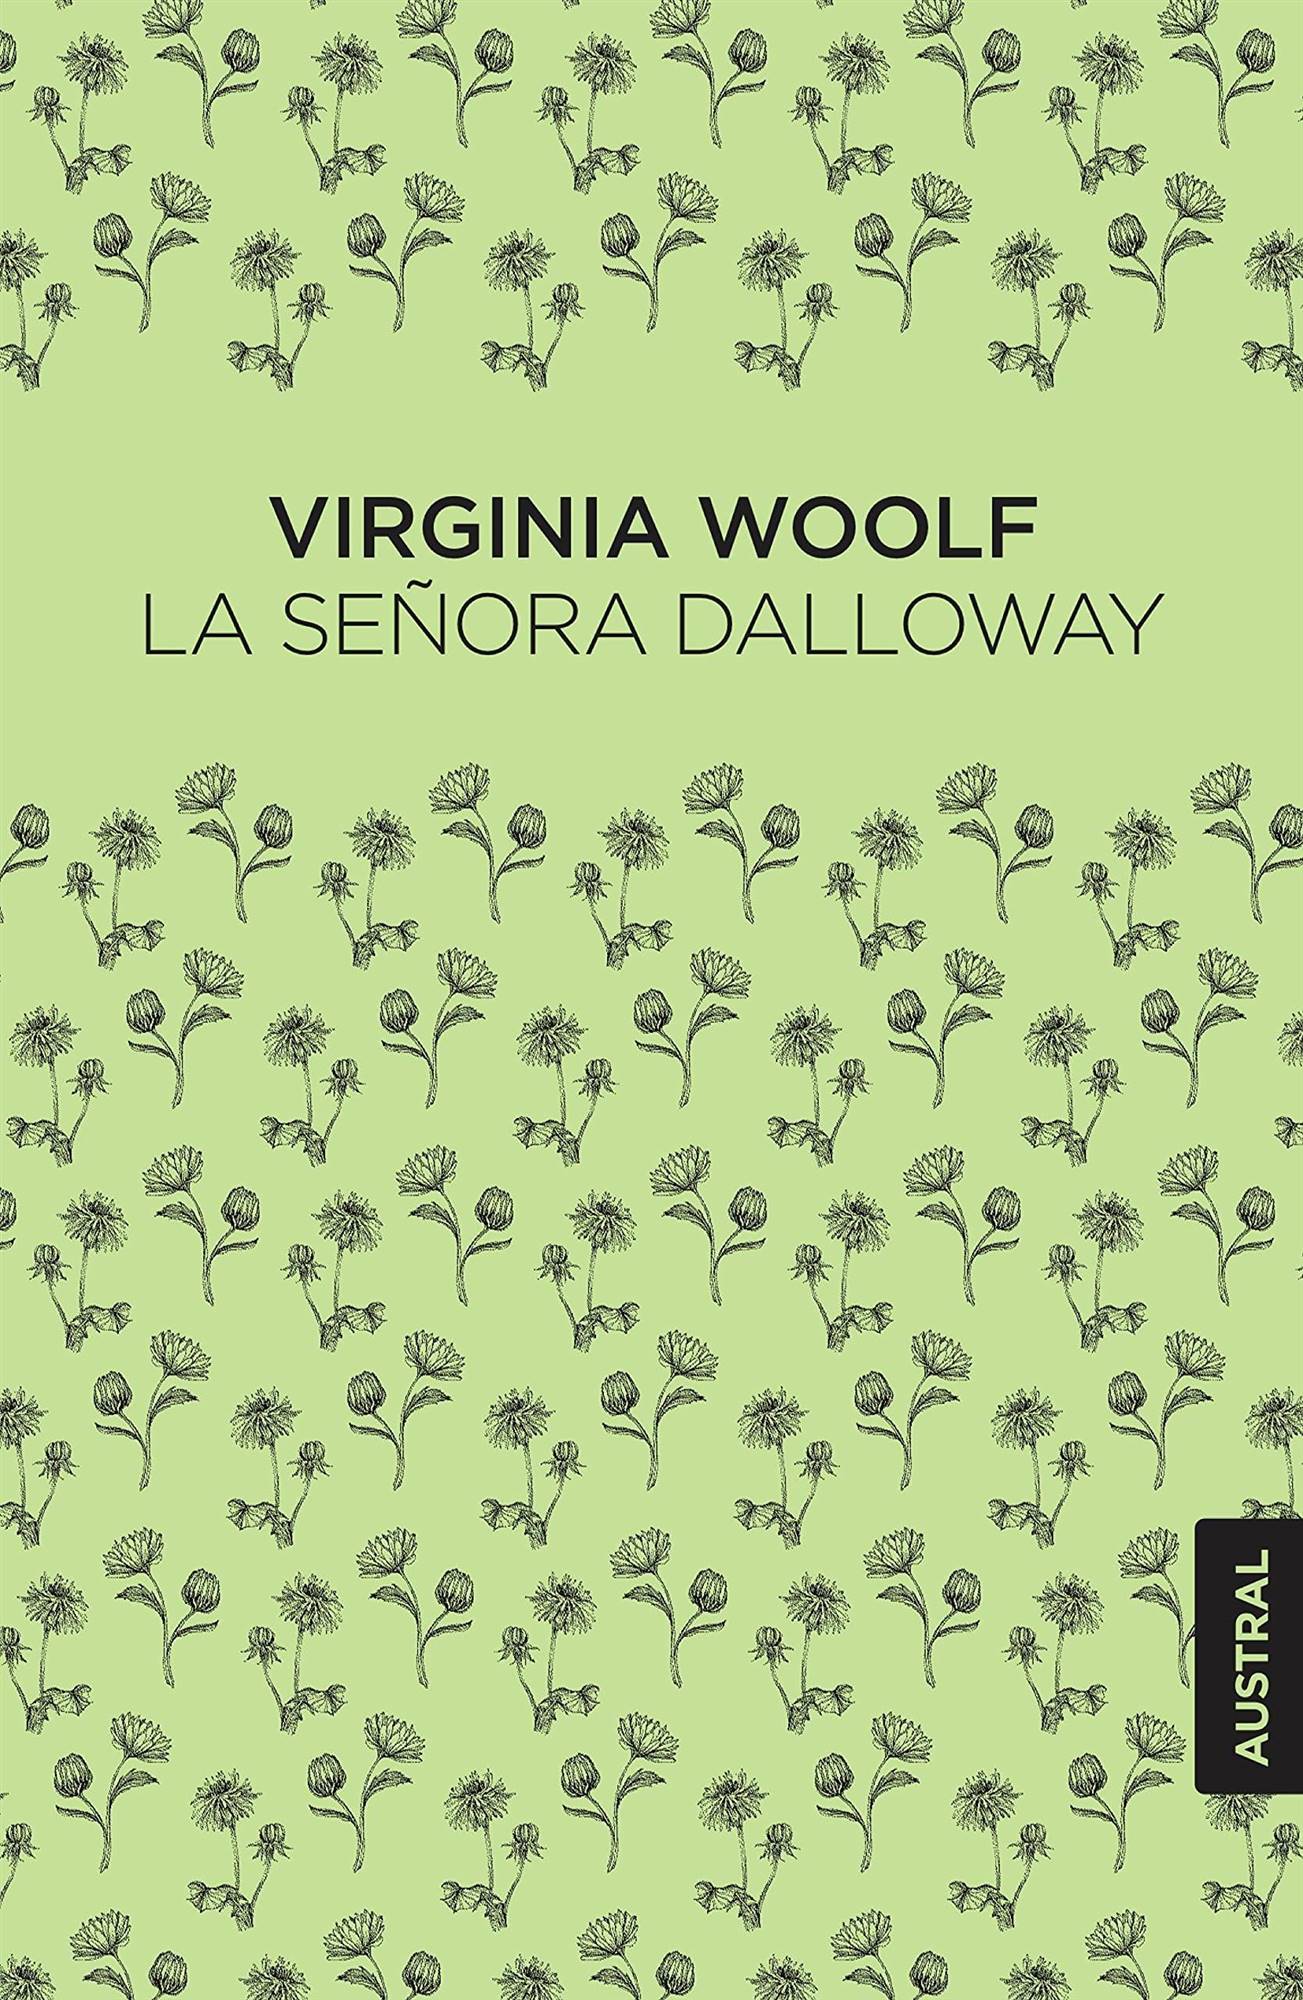 La señora Dalloway (Virginia Woolf)